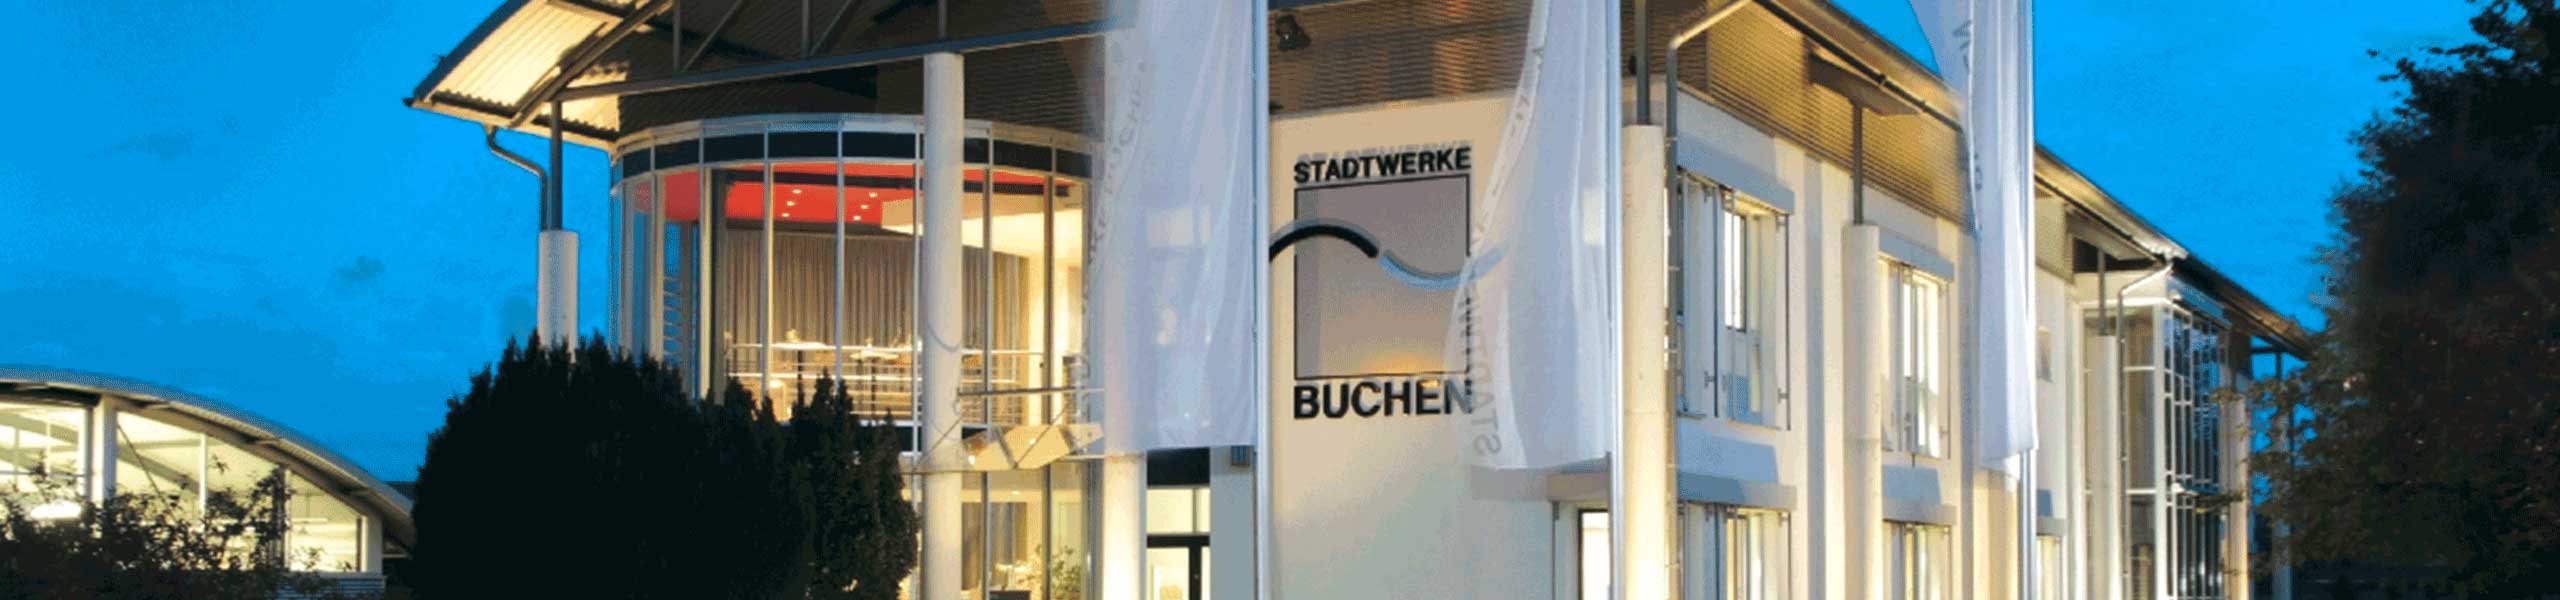 Stadtwerke Buchen GmbH & Co KG - Übersicht zum Kern der 65% EE-Anteil-Regelung im GEG